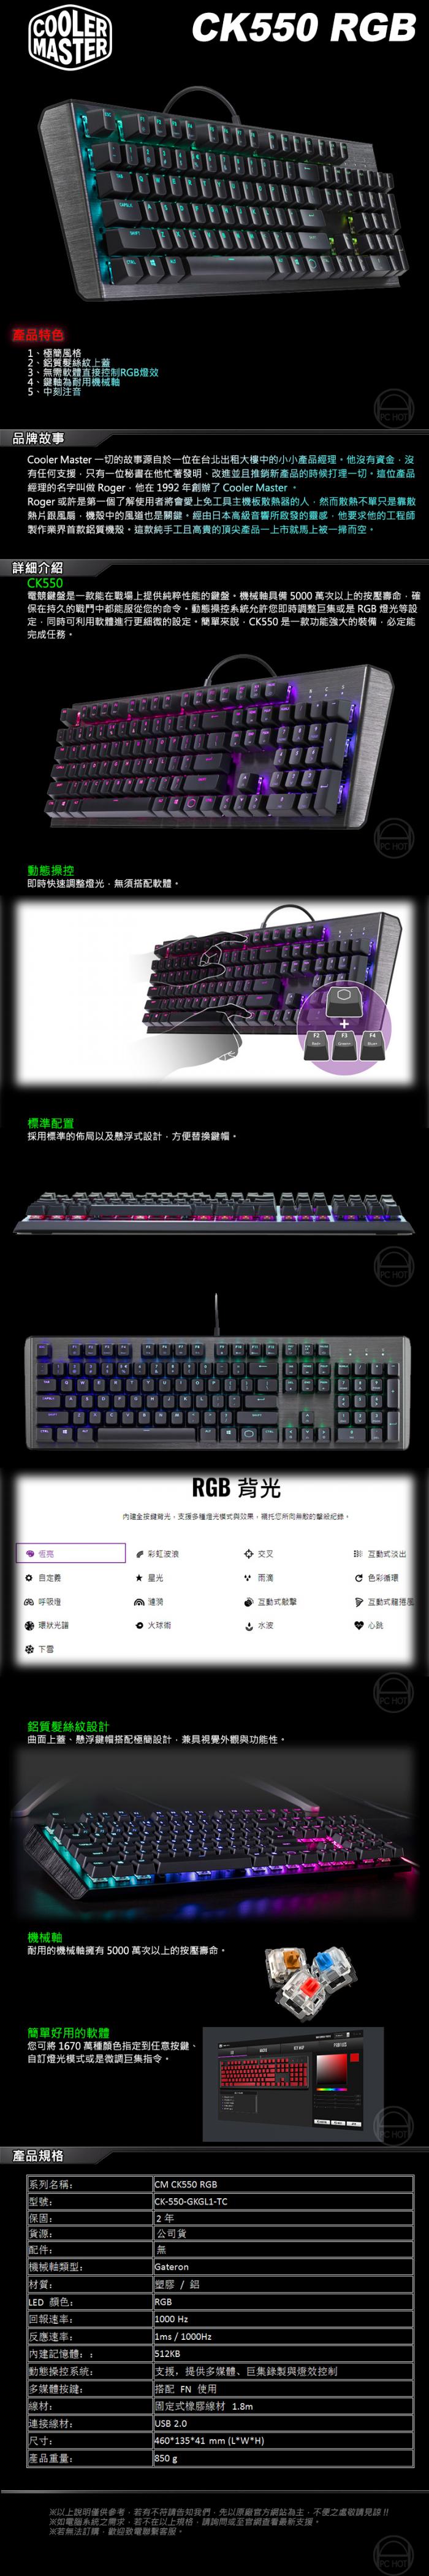 酷碼 CK550 紅軸 RGB 機械式鍵盤 送手靠墊